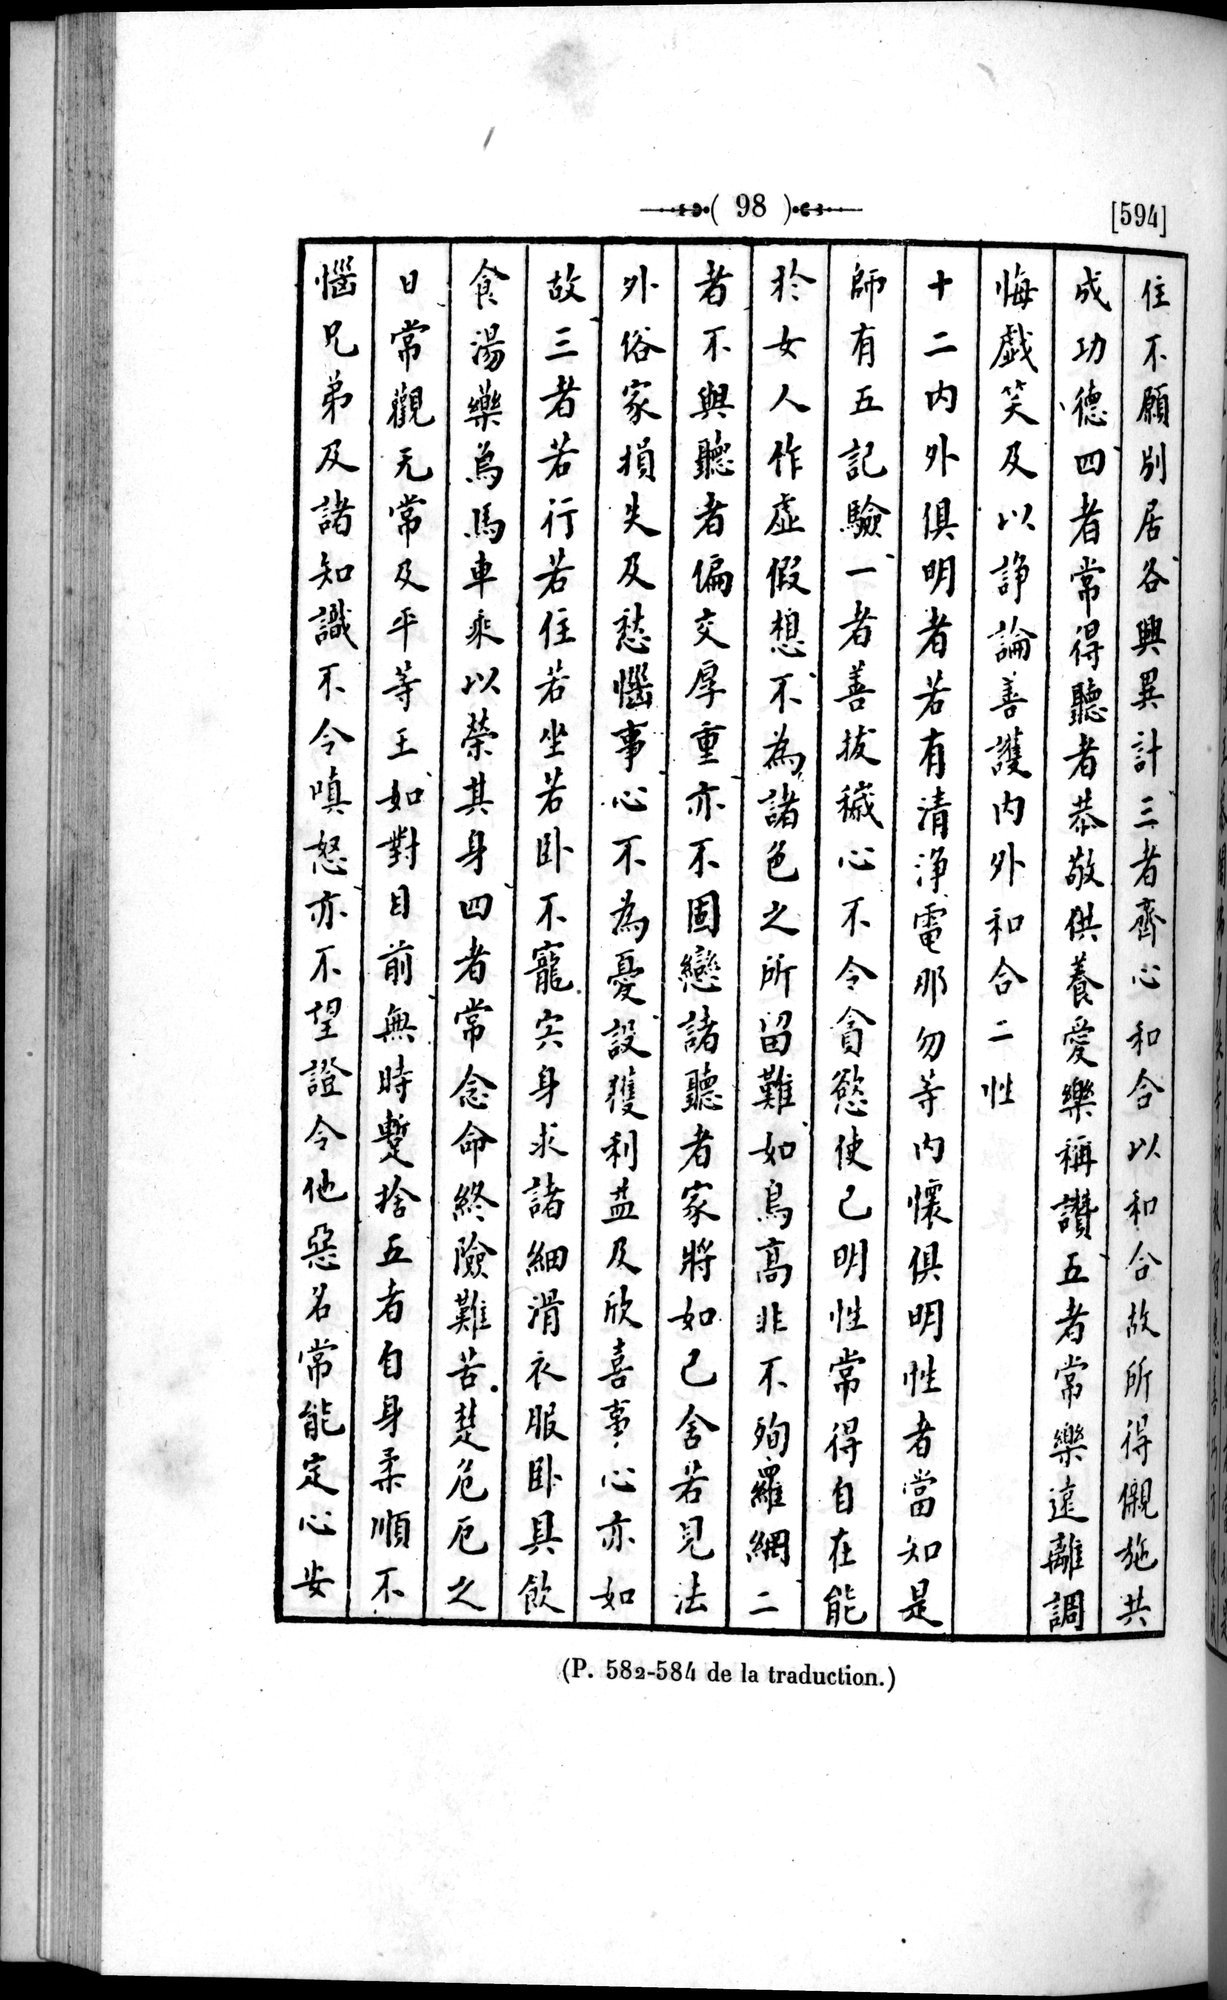 Un traité manichéen retrouvé en Chine : vol.1 / Page 108 (Grayscale High Resolution Image)